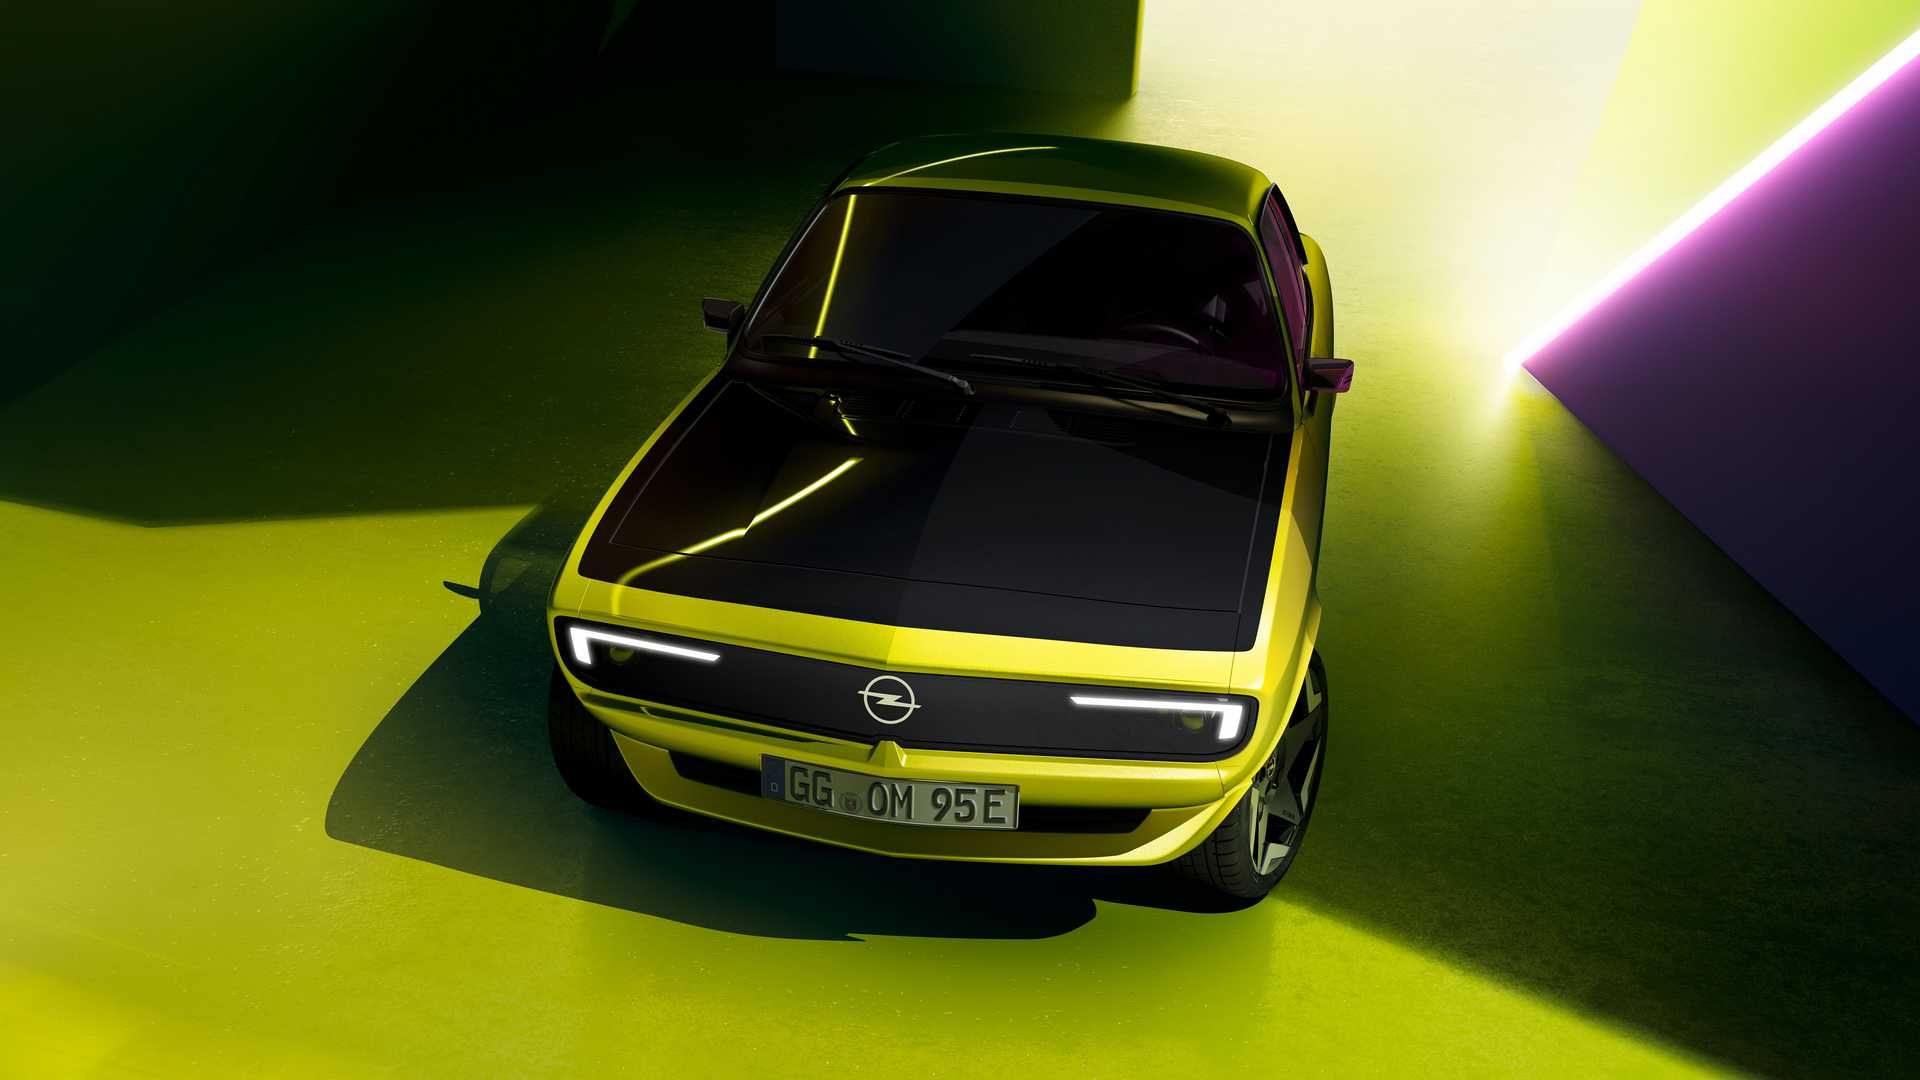 نمای سه چهارم اوپل مانتا جی اس ای الکترومود / Opel Manta GSe ElektroMOD زرد رنگ با کاپوت مشکی